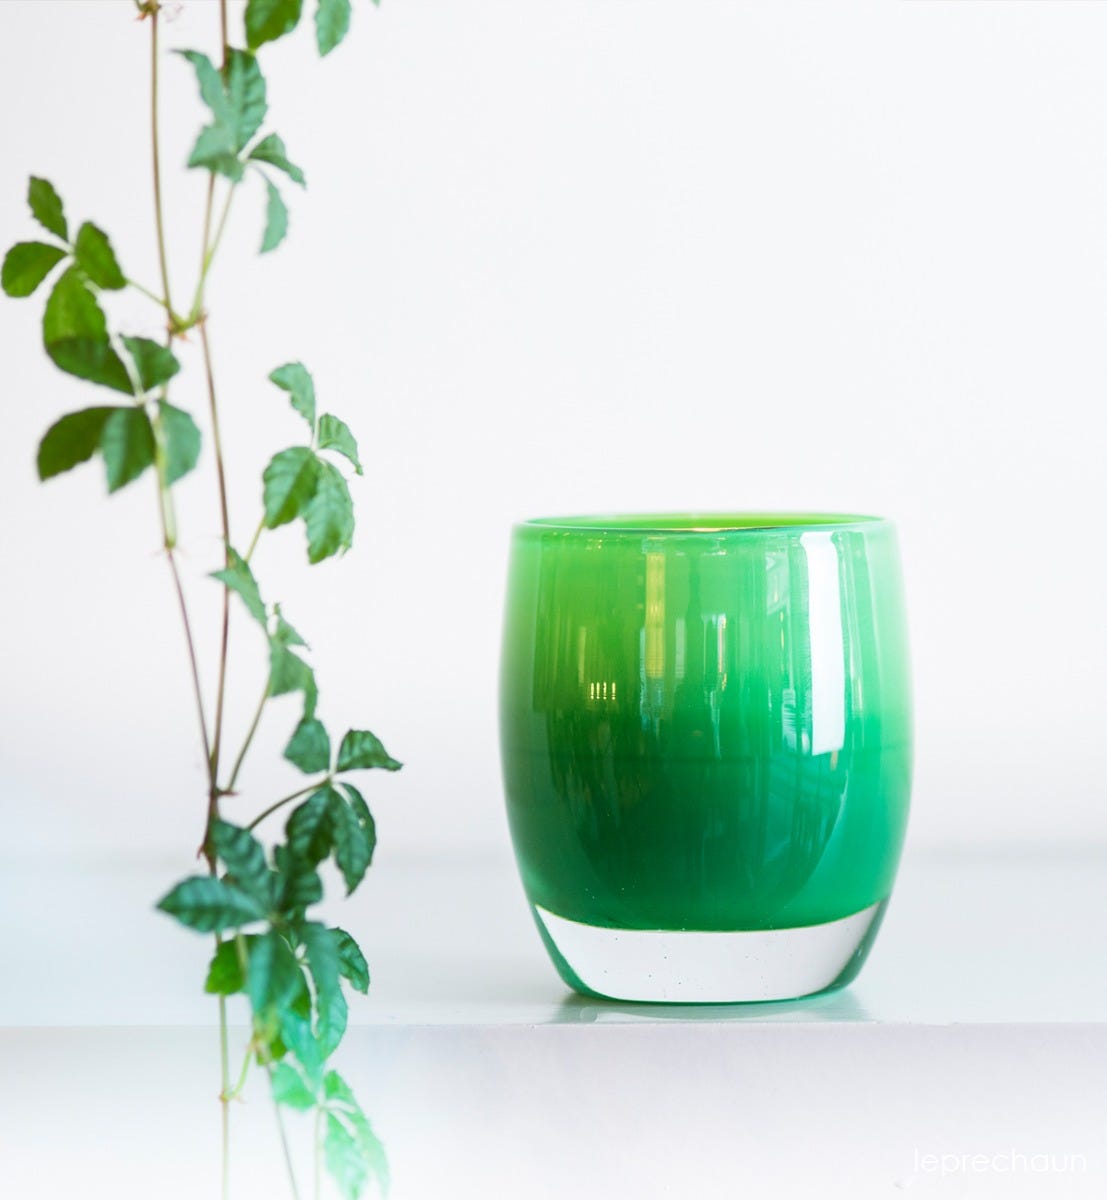 leprechaun hand-blown green glass votive candle holder